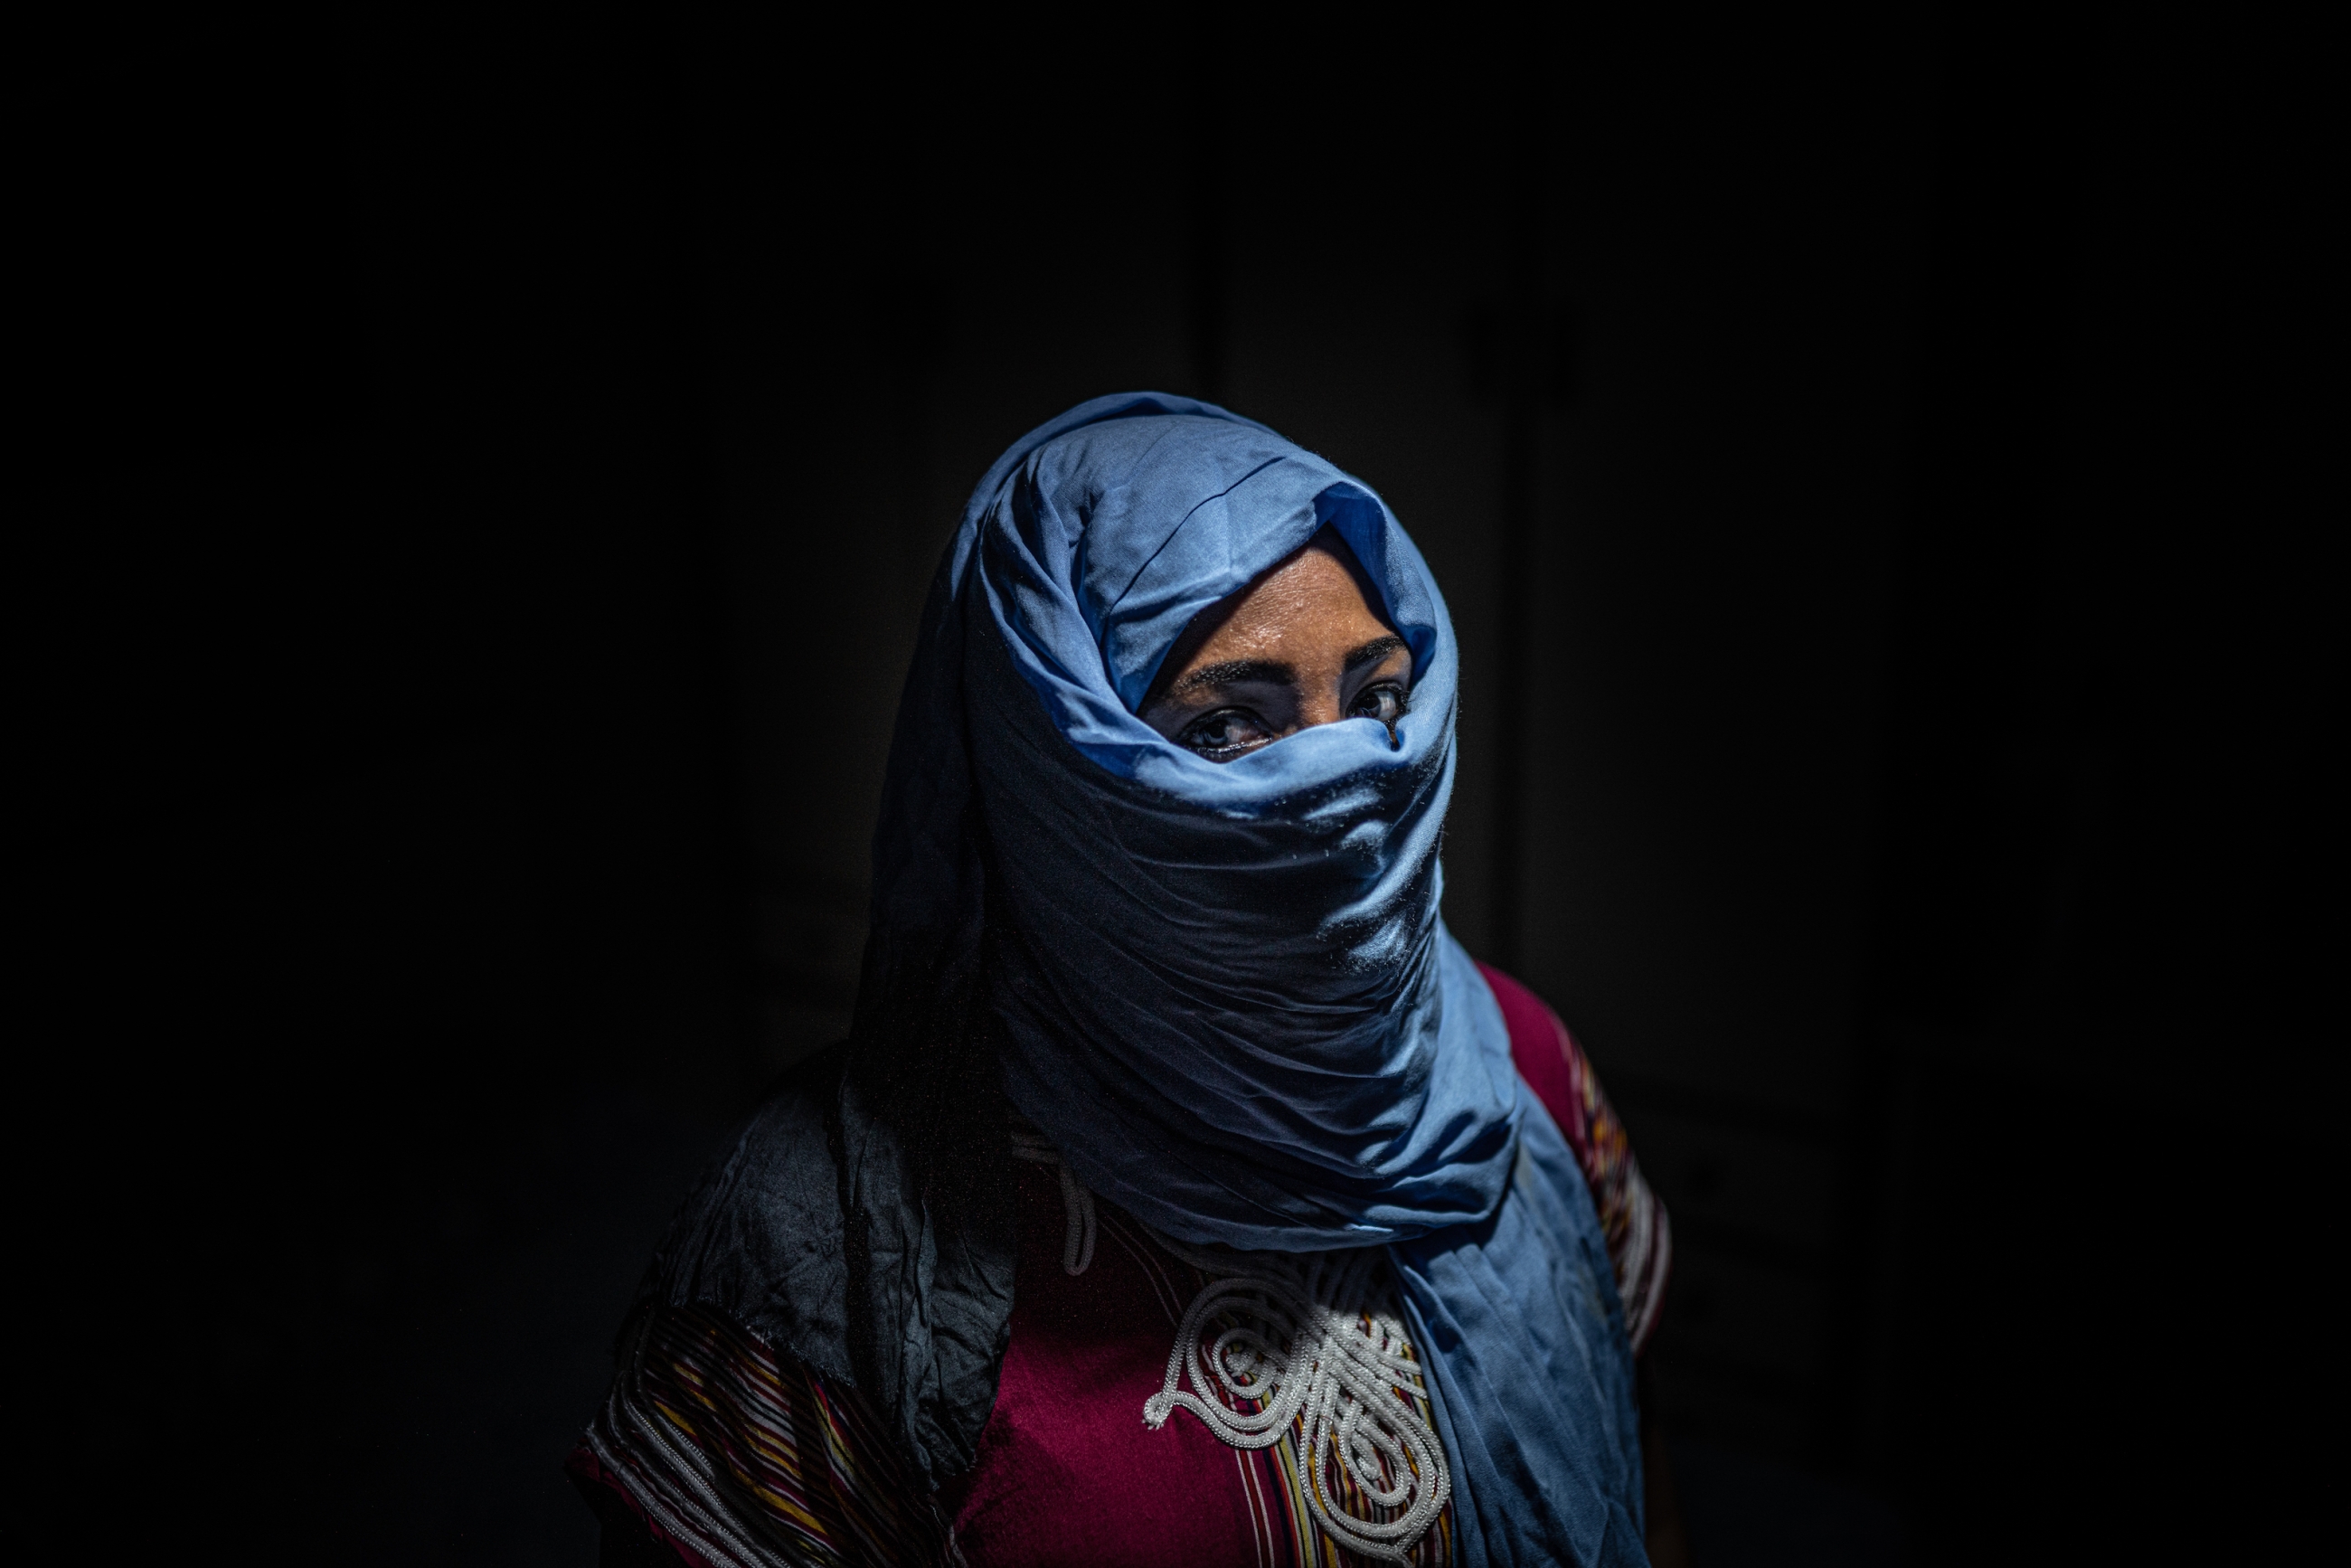 Moroccan migrant worker Aisha